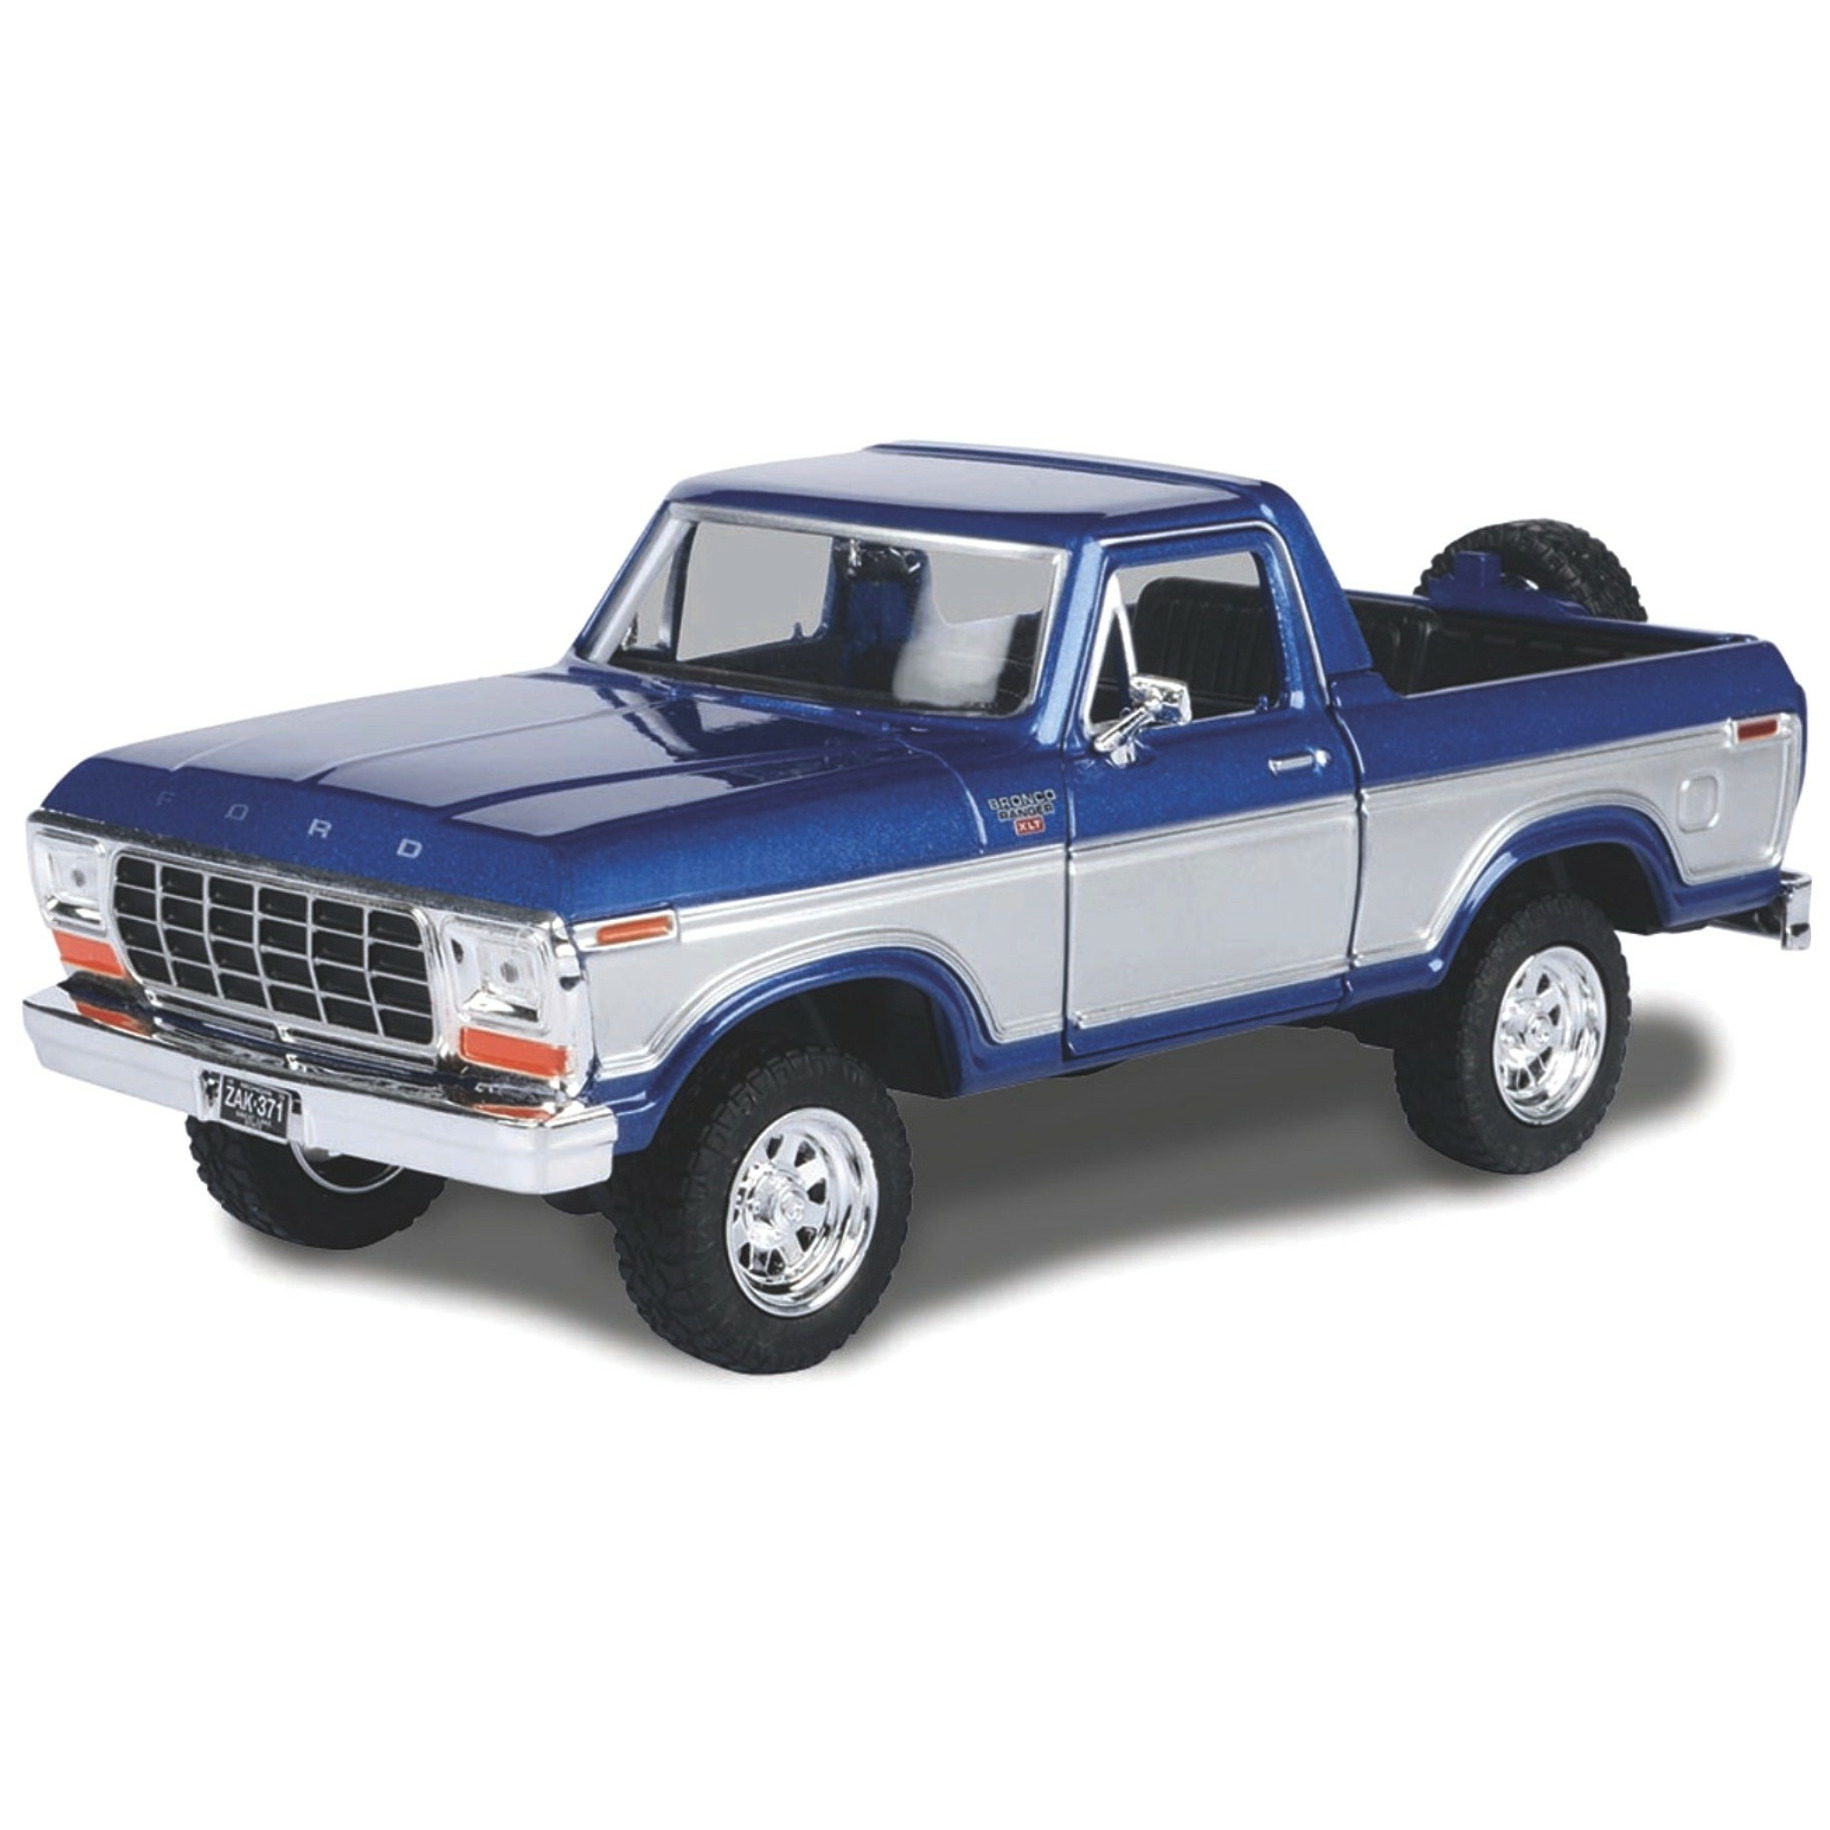 Modelauto-speelgoedauto Ford Bronco pick-up blauw schaal 1:24-19 x 8 x 8 cm